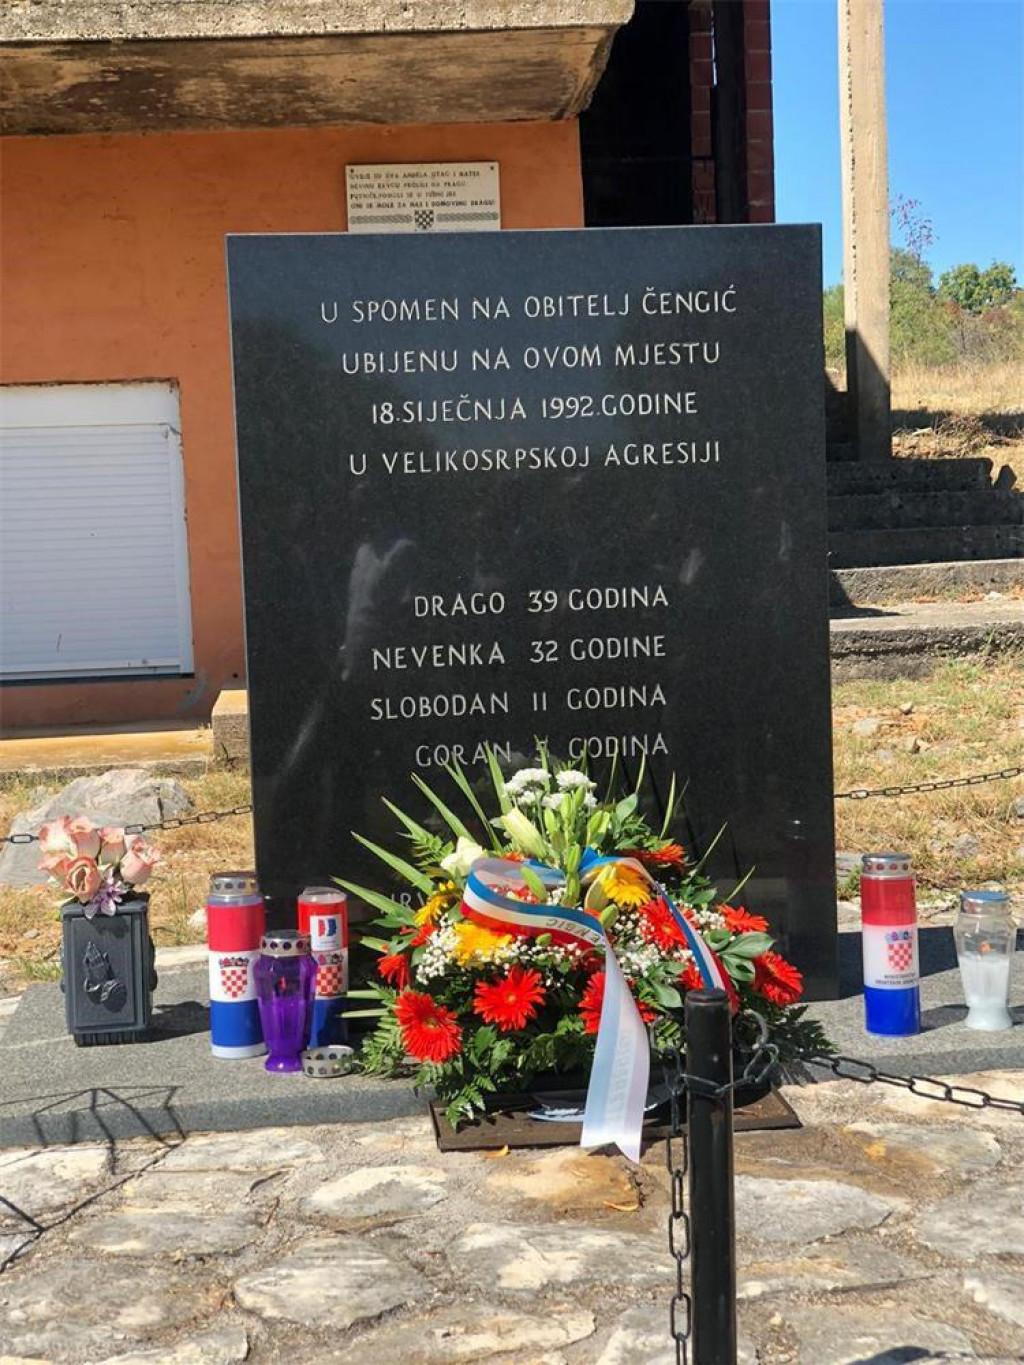 U selu Ervenik kod Knina prije 30 godina ubijena je četveročlana obitelj Čengić